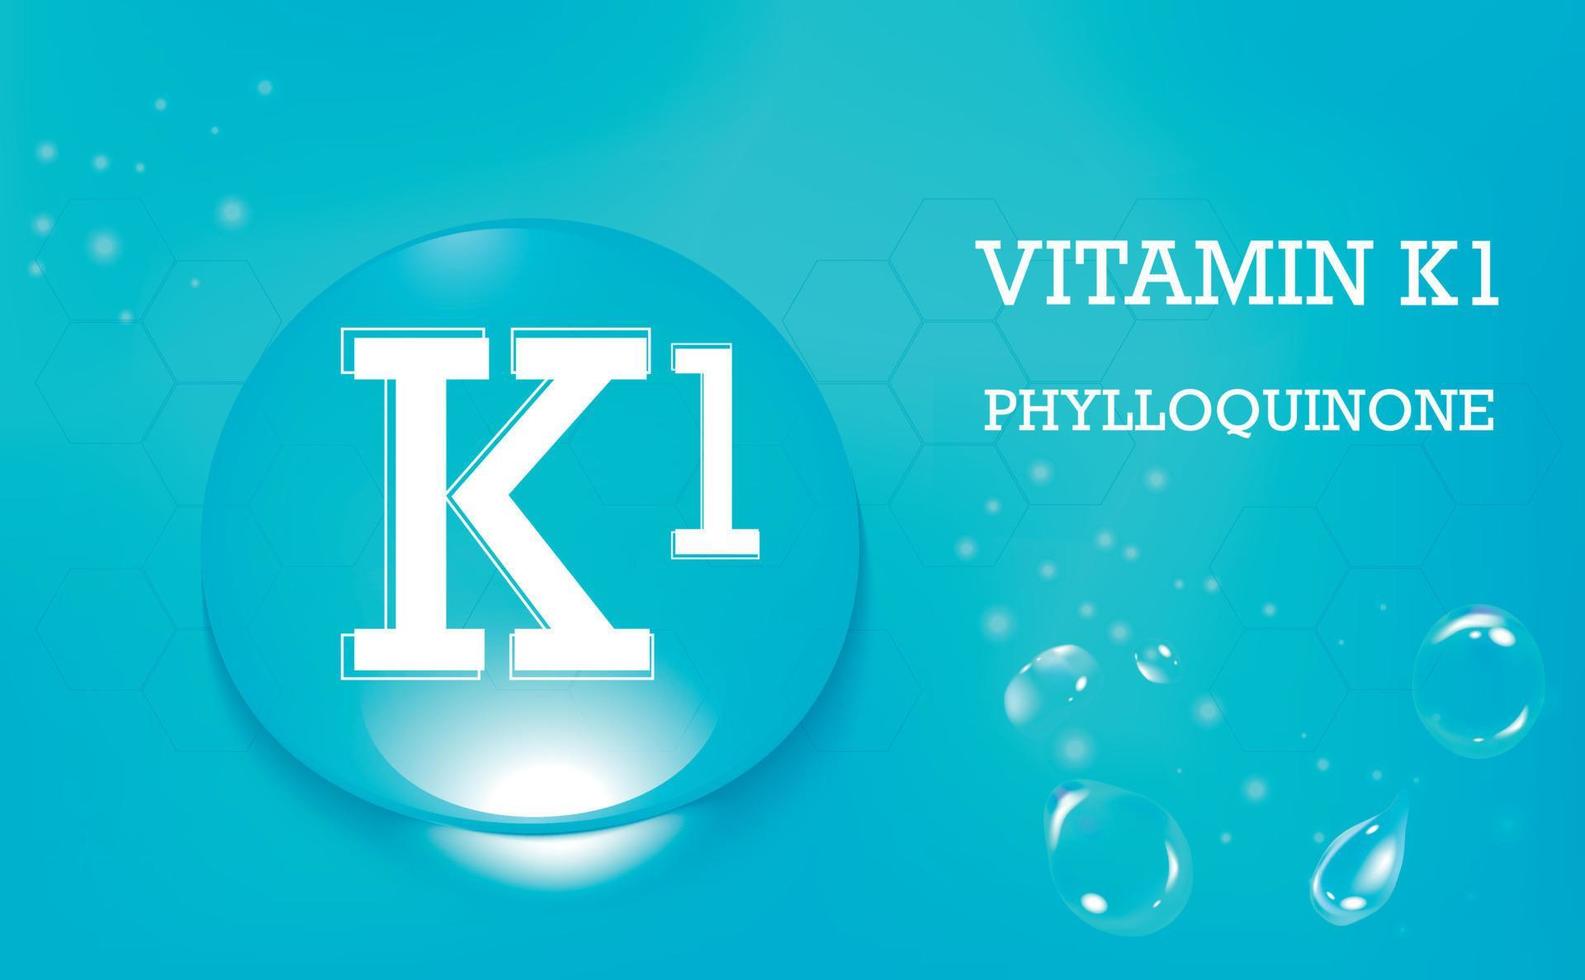 vitamine k1, phylloquinon. druppels water op een blauwe achtergrond met kleurovergang. voedingssupplement en een gezonde levensstijl. . vector illustratie